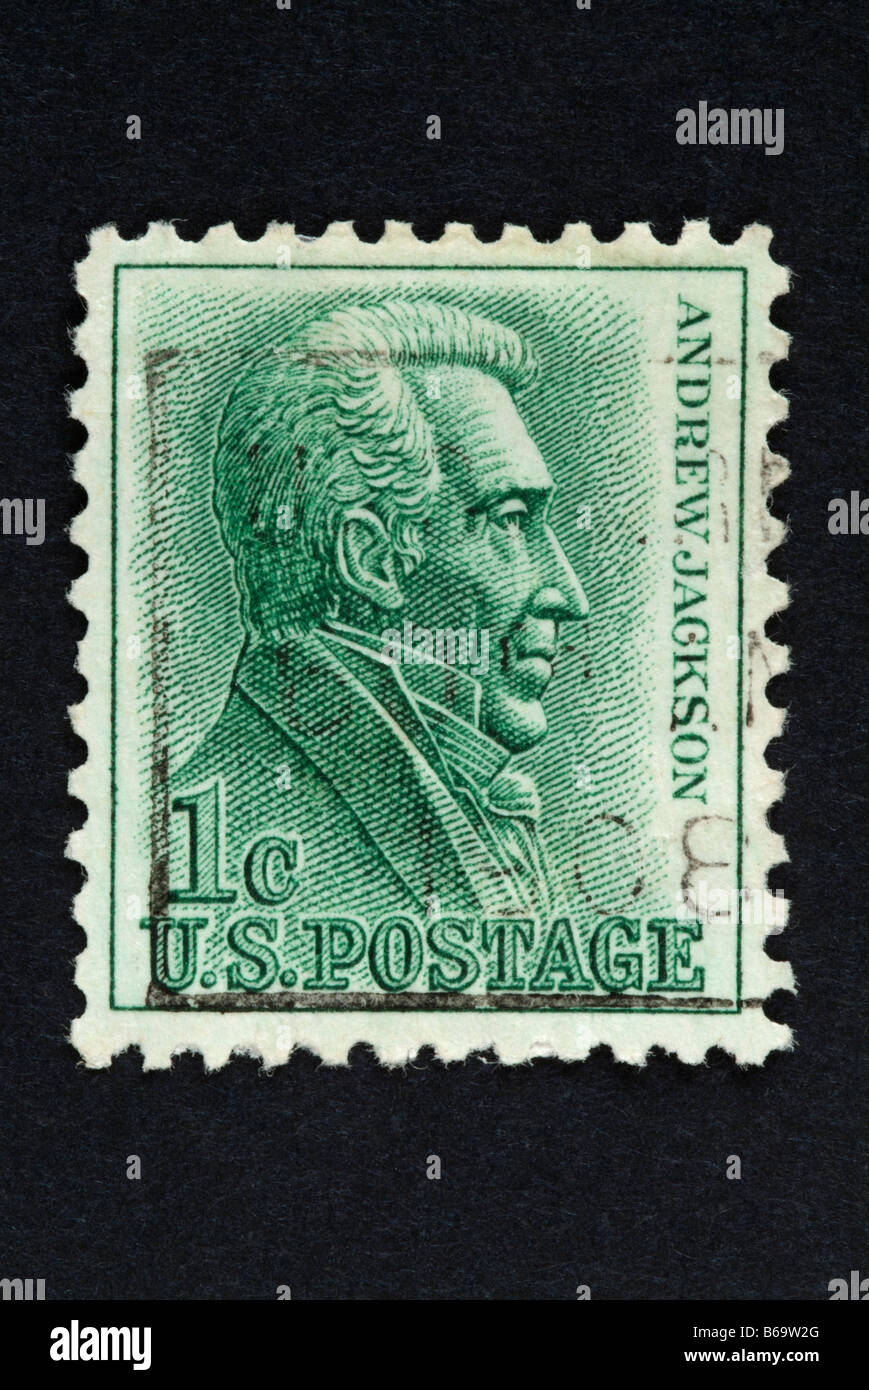 Un 1 cent noi francobollo con immagine di Andrew Jackson. Foto Stock